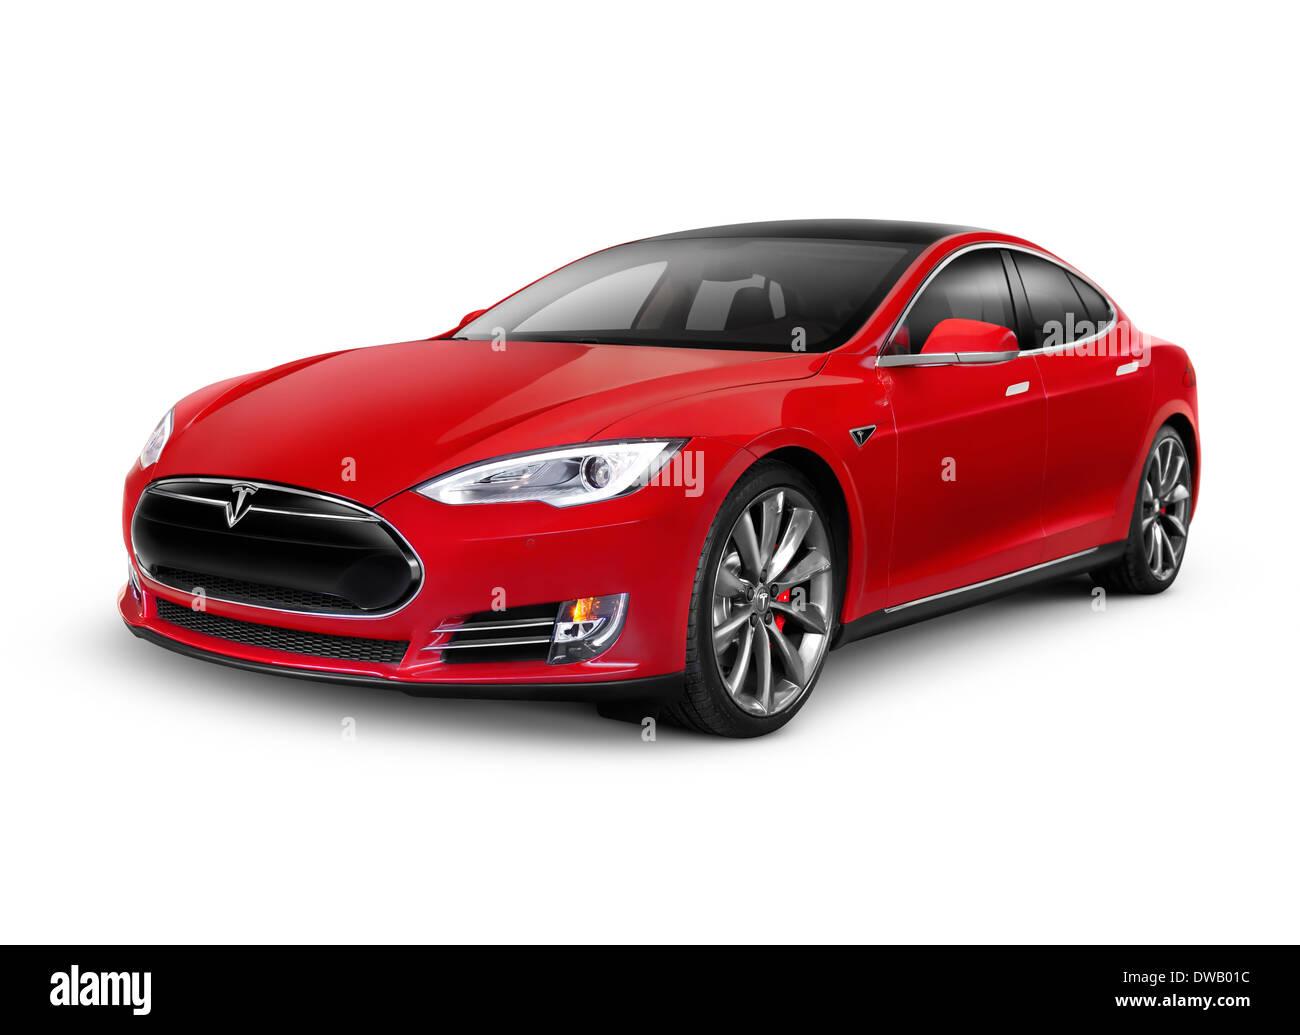 Führerschein und Ausdrucke bei MaximImages.com – Rot 2014 Tesla Model S Luxus-Elektroauto isoliert auf weißem Hintergrund mit Beschneidungspfad Stockfoto